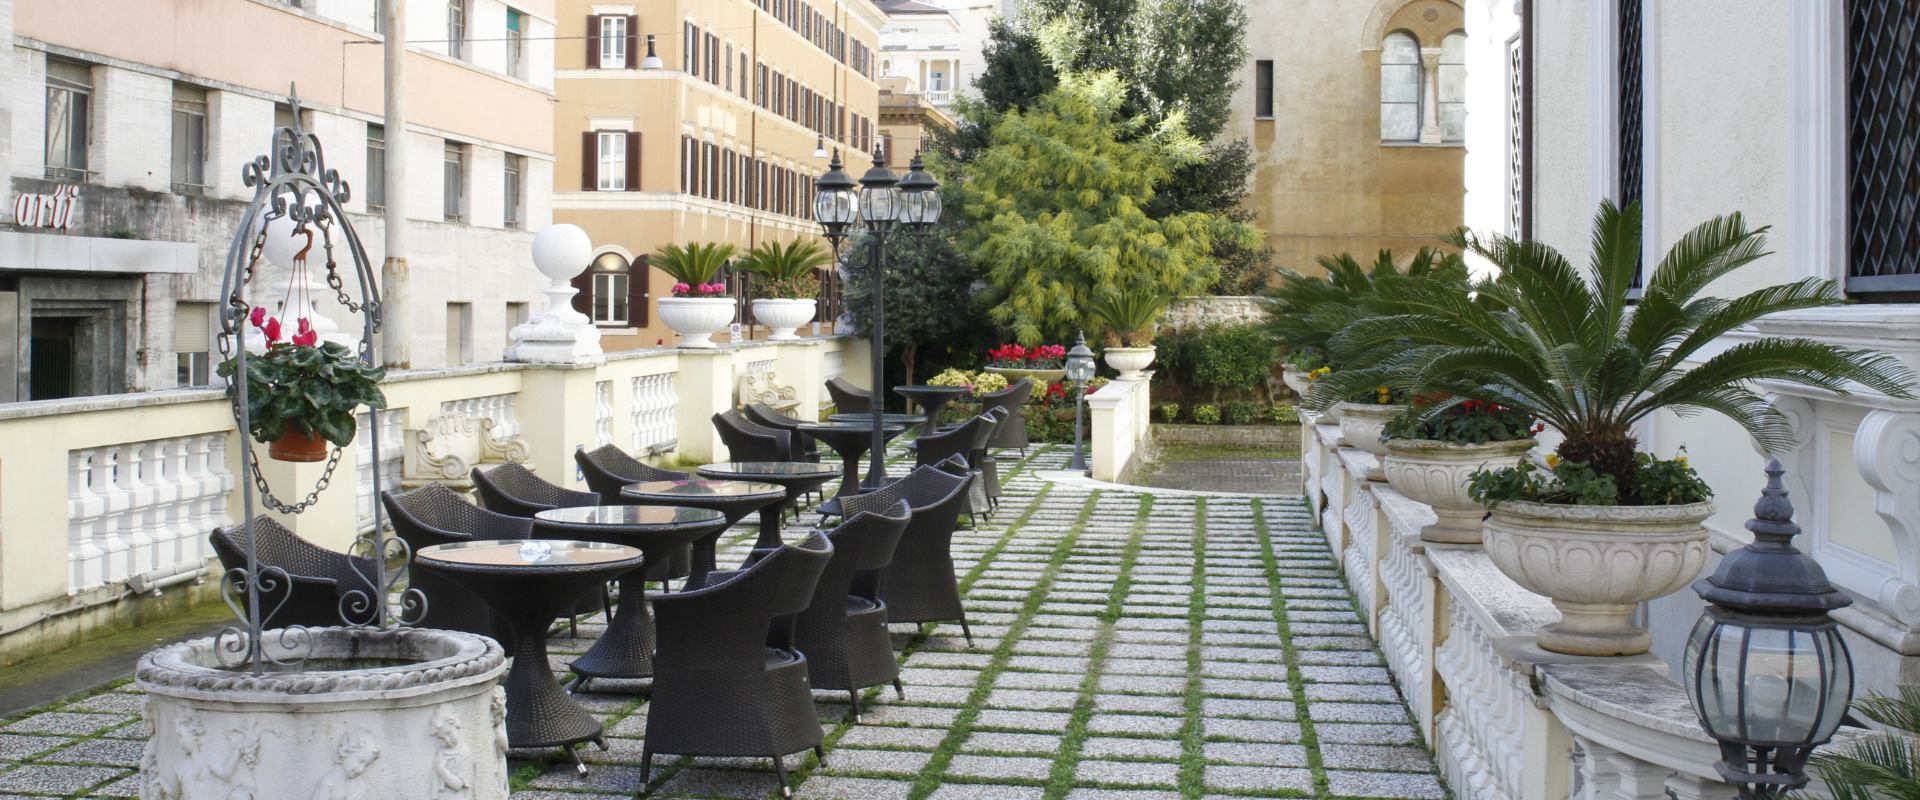 Lo charme del nostro giardino Hotel Villa Pinciana Roma